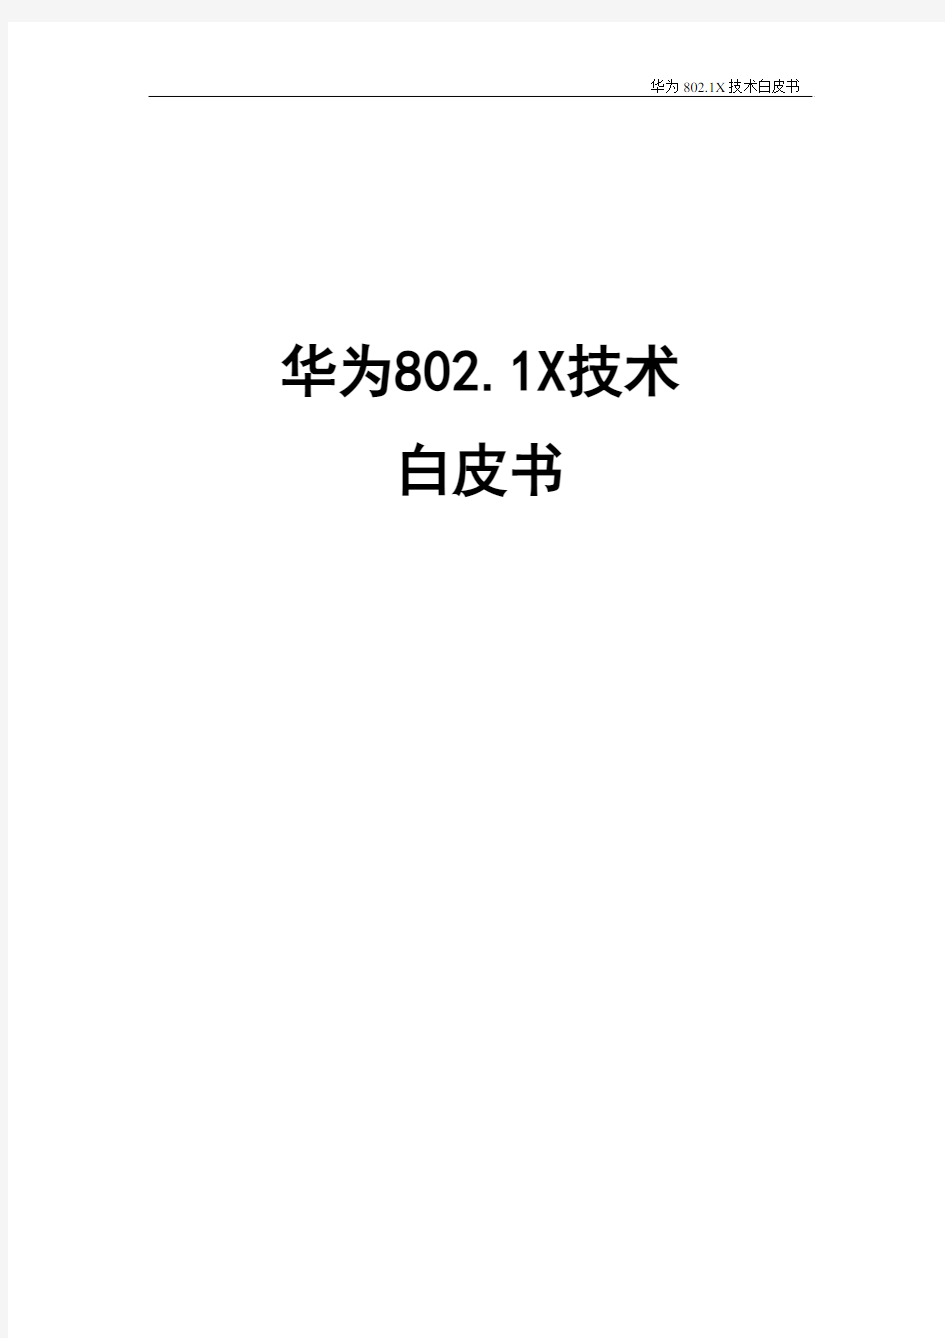 华为802.1X技术白皮书